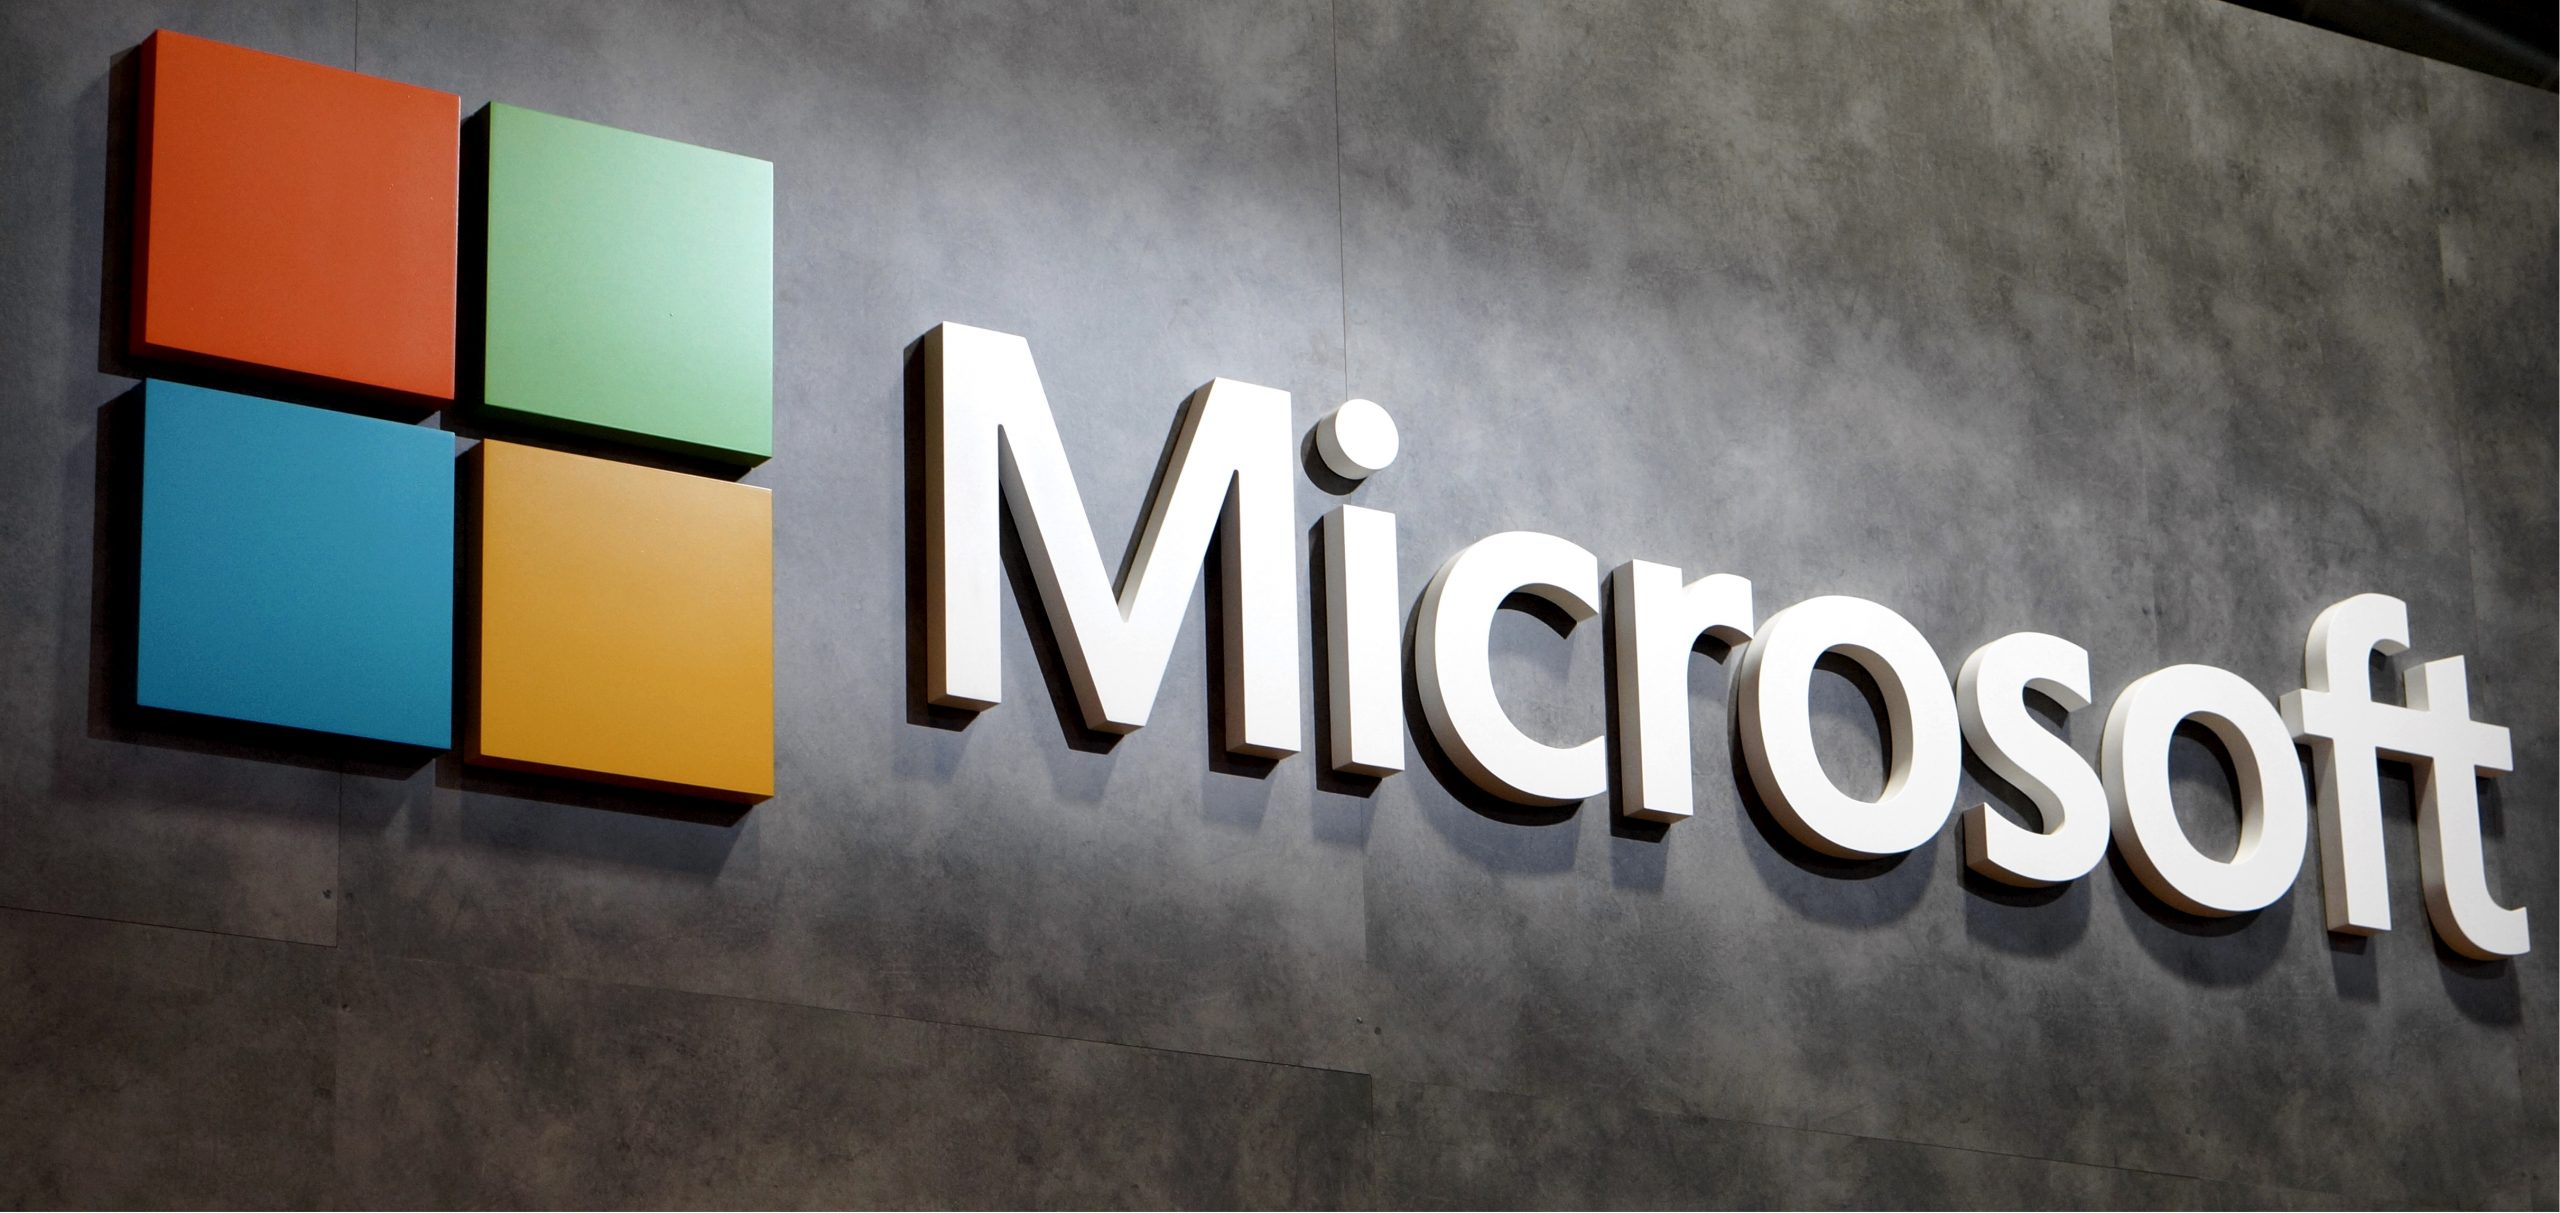 Tehnološki gigant Microsoft bilježi rast neto profita i prihoda